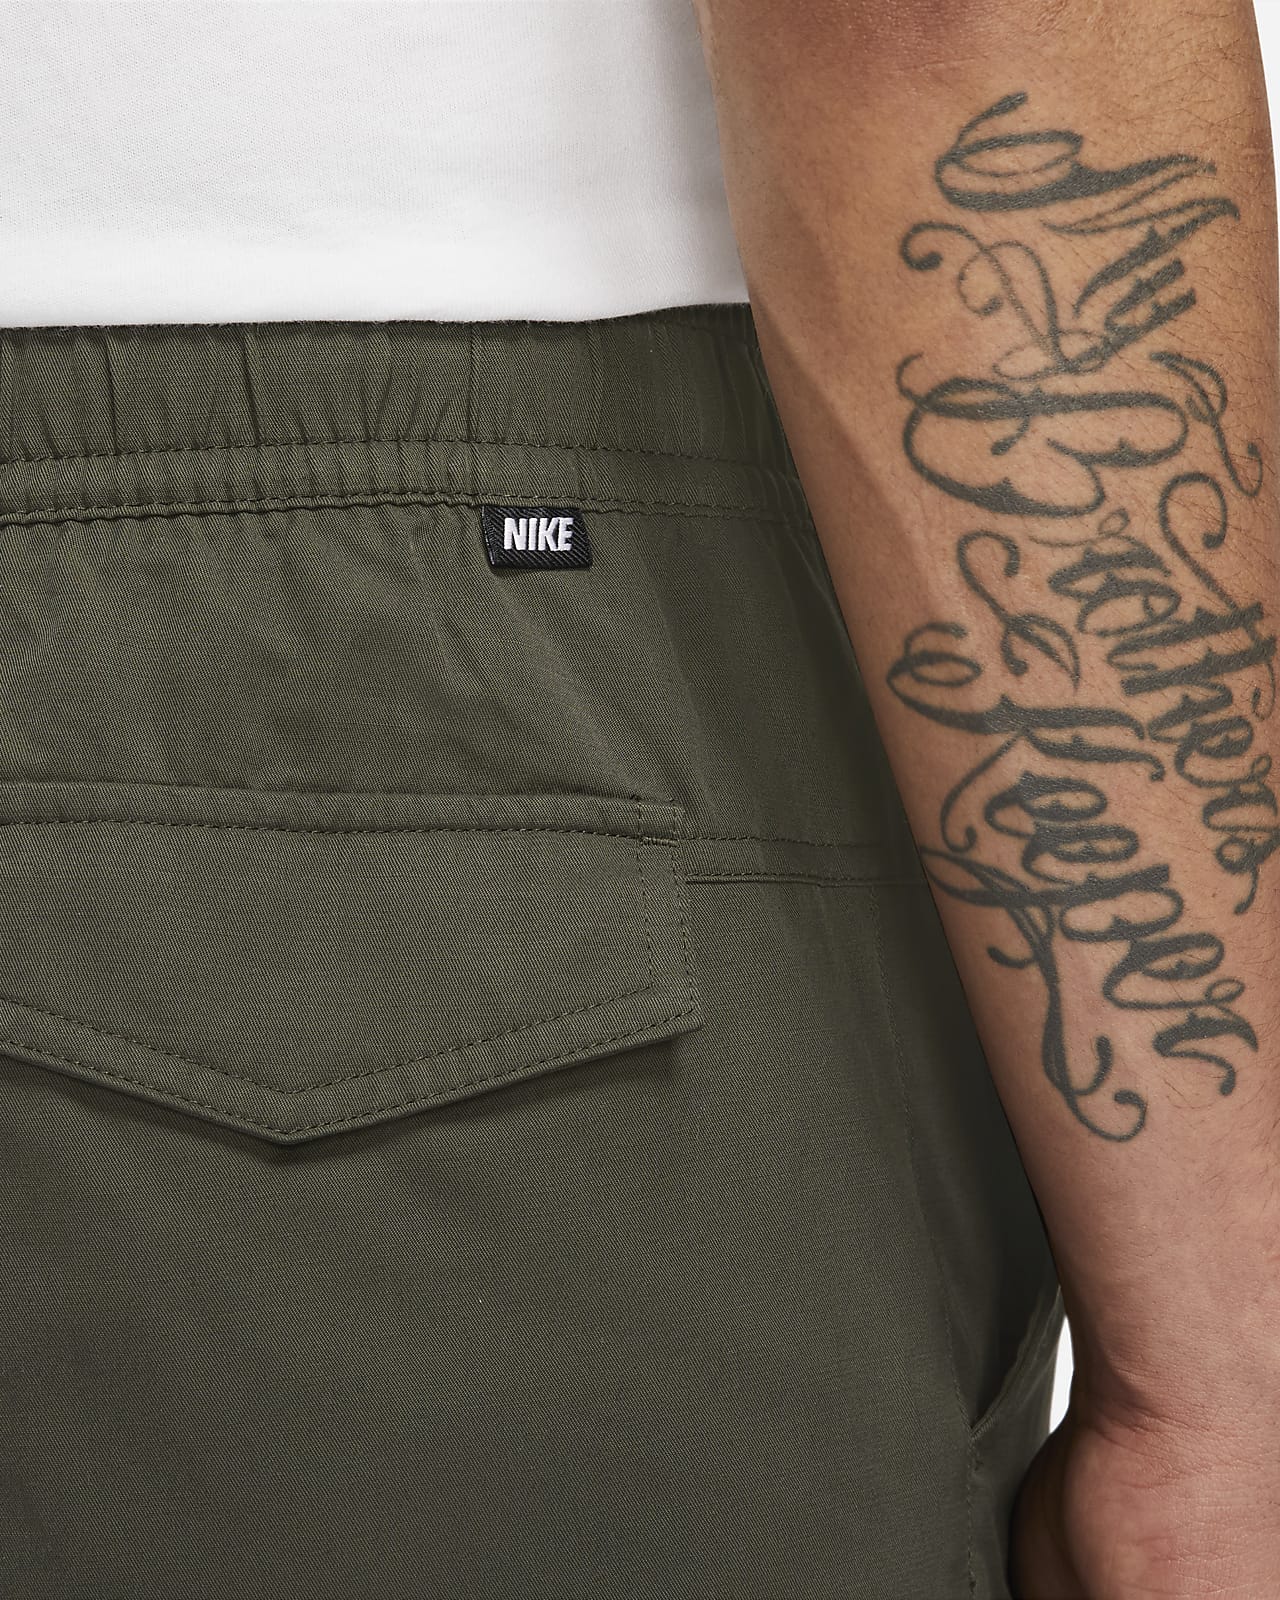 Nike Sportswear M NSW STE UTILITY - Cargo trousers - limestone